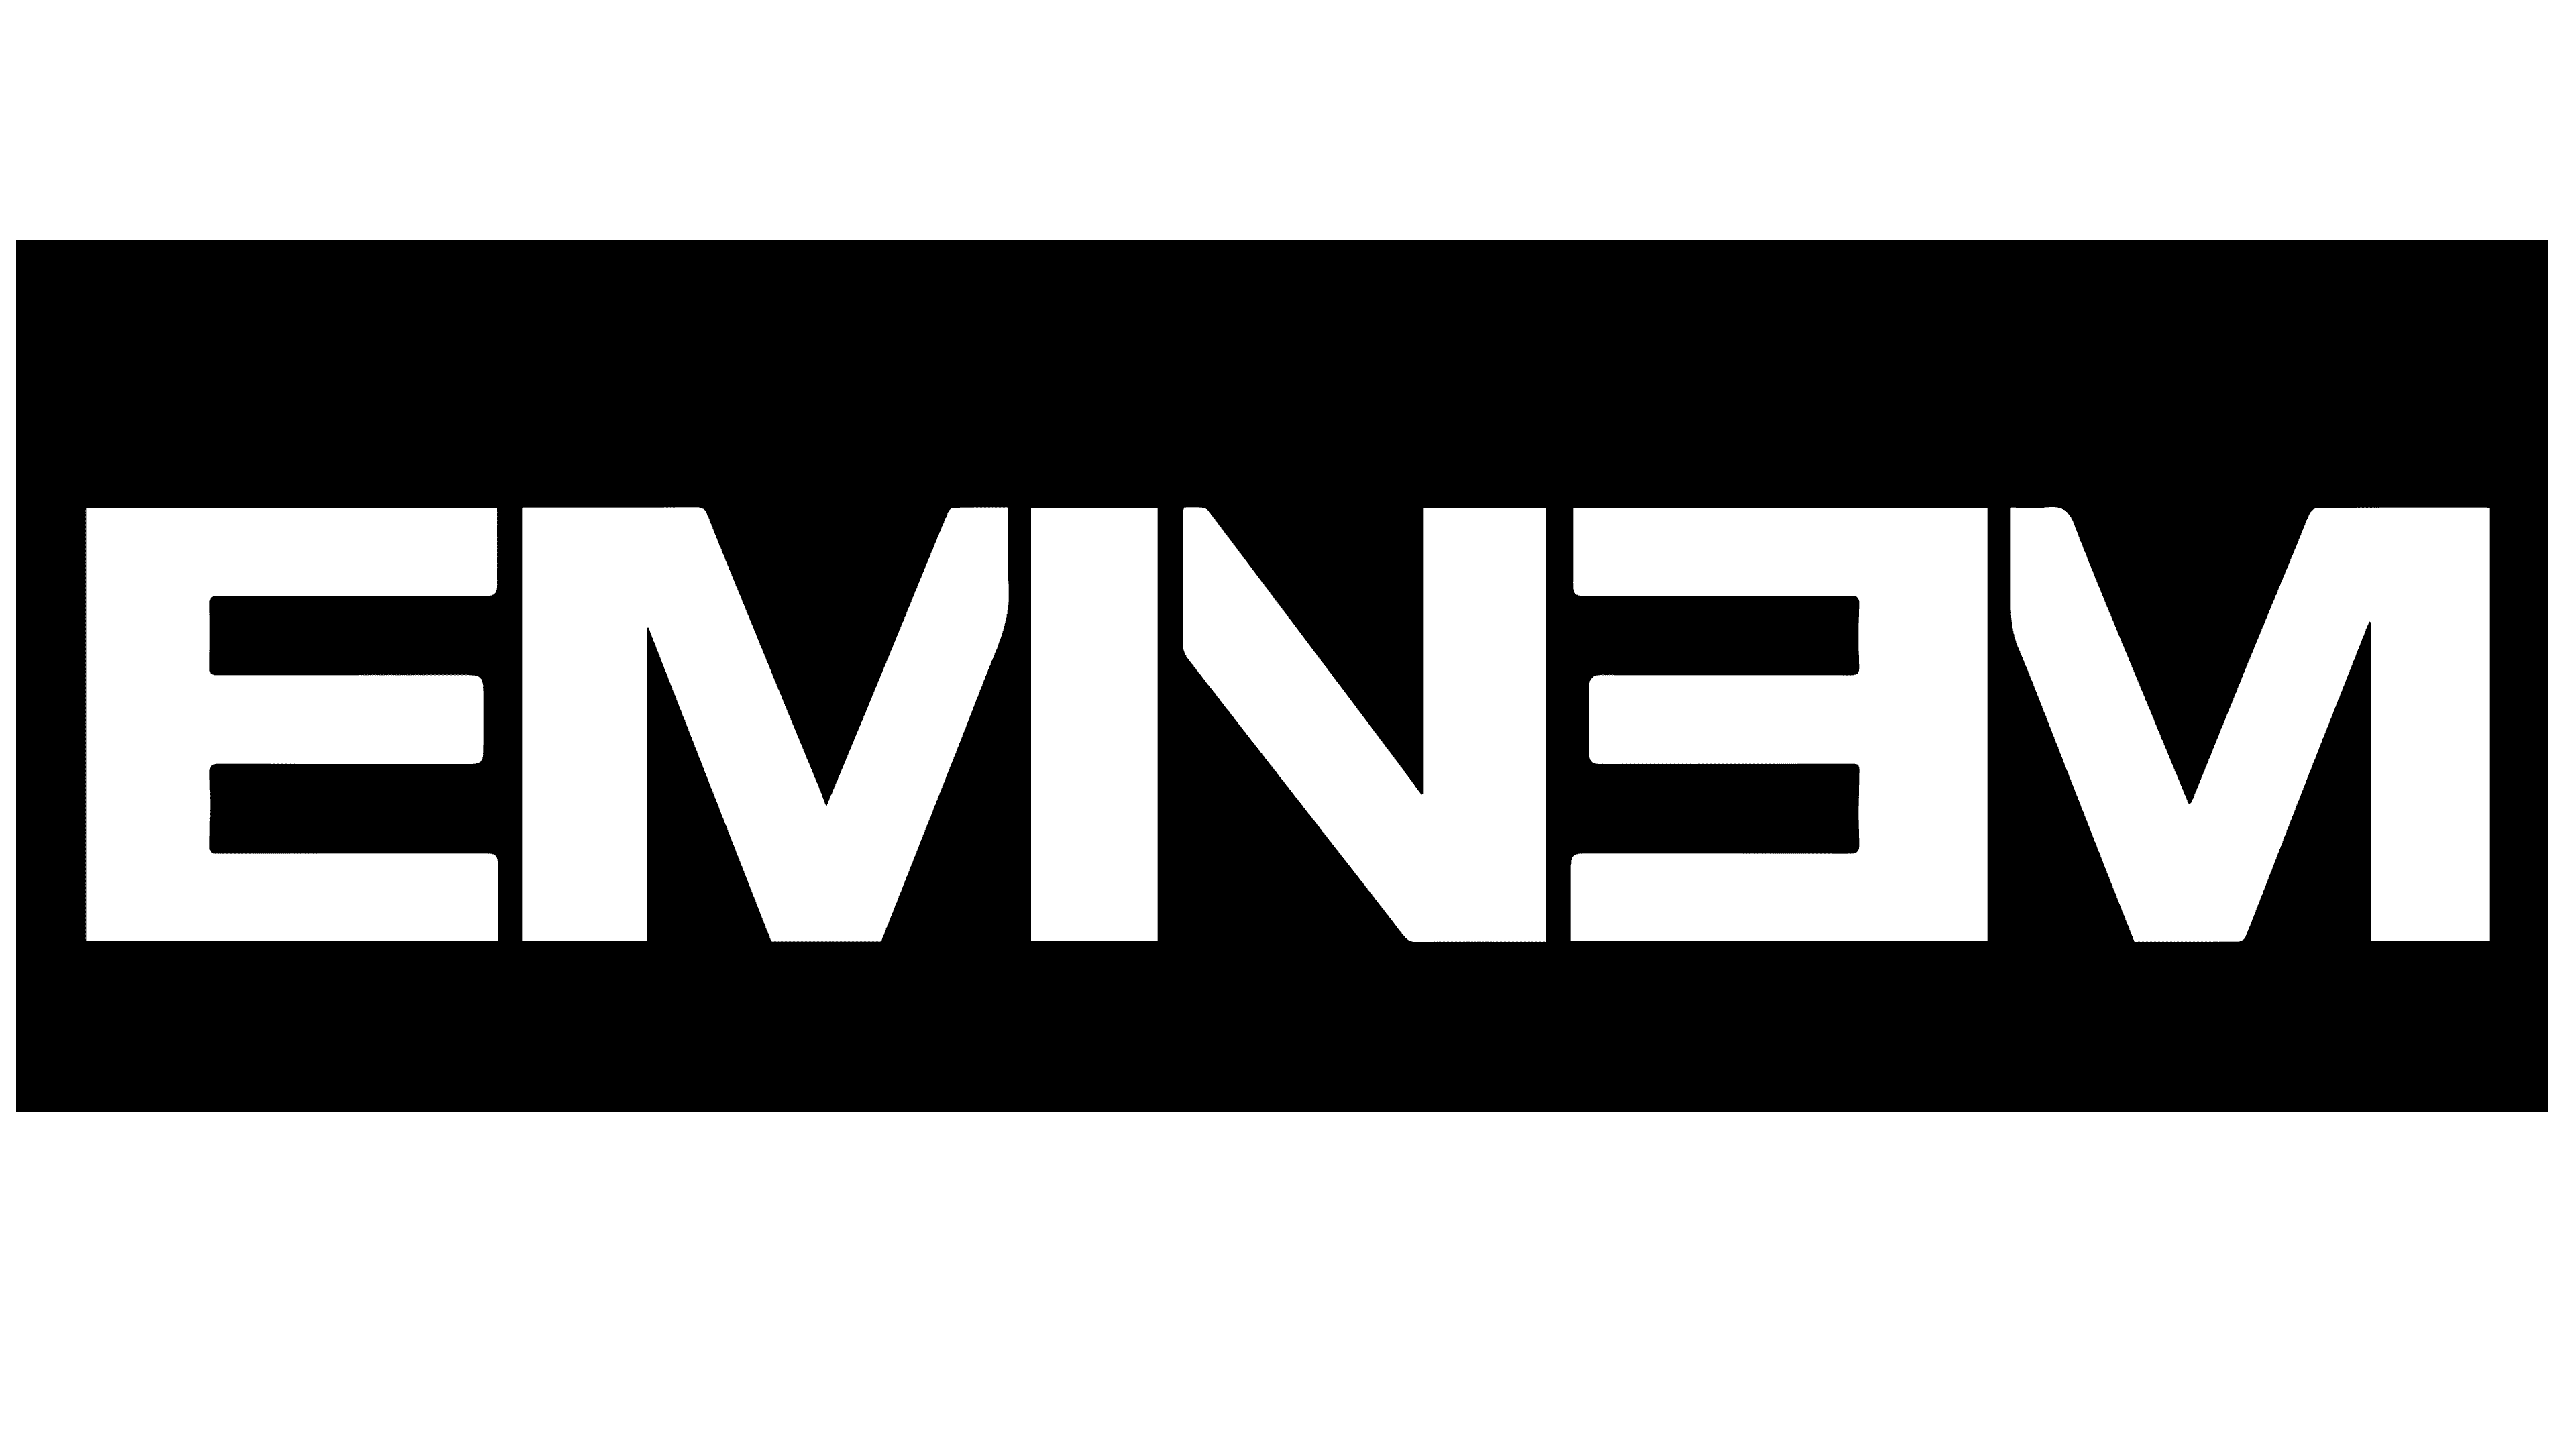 Eminem Logo, symbol, meaning, history, PNG, brand